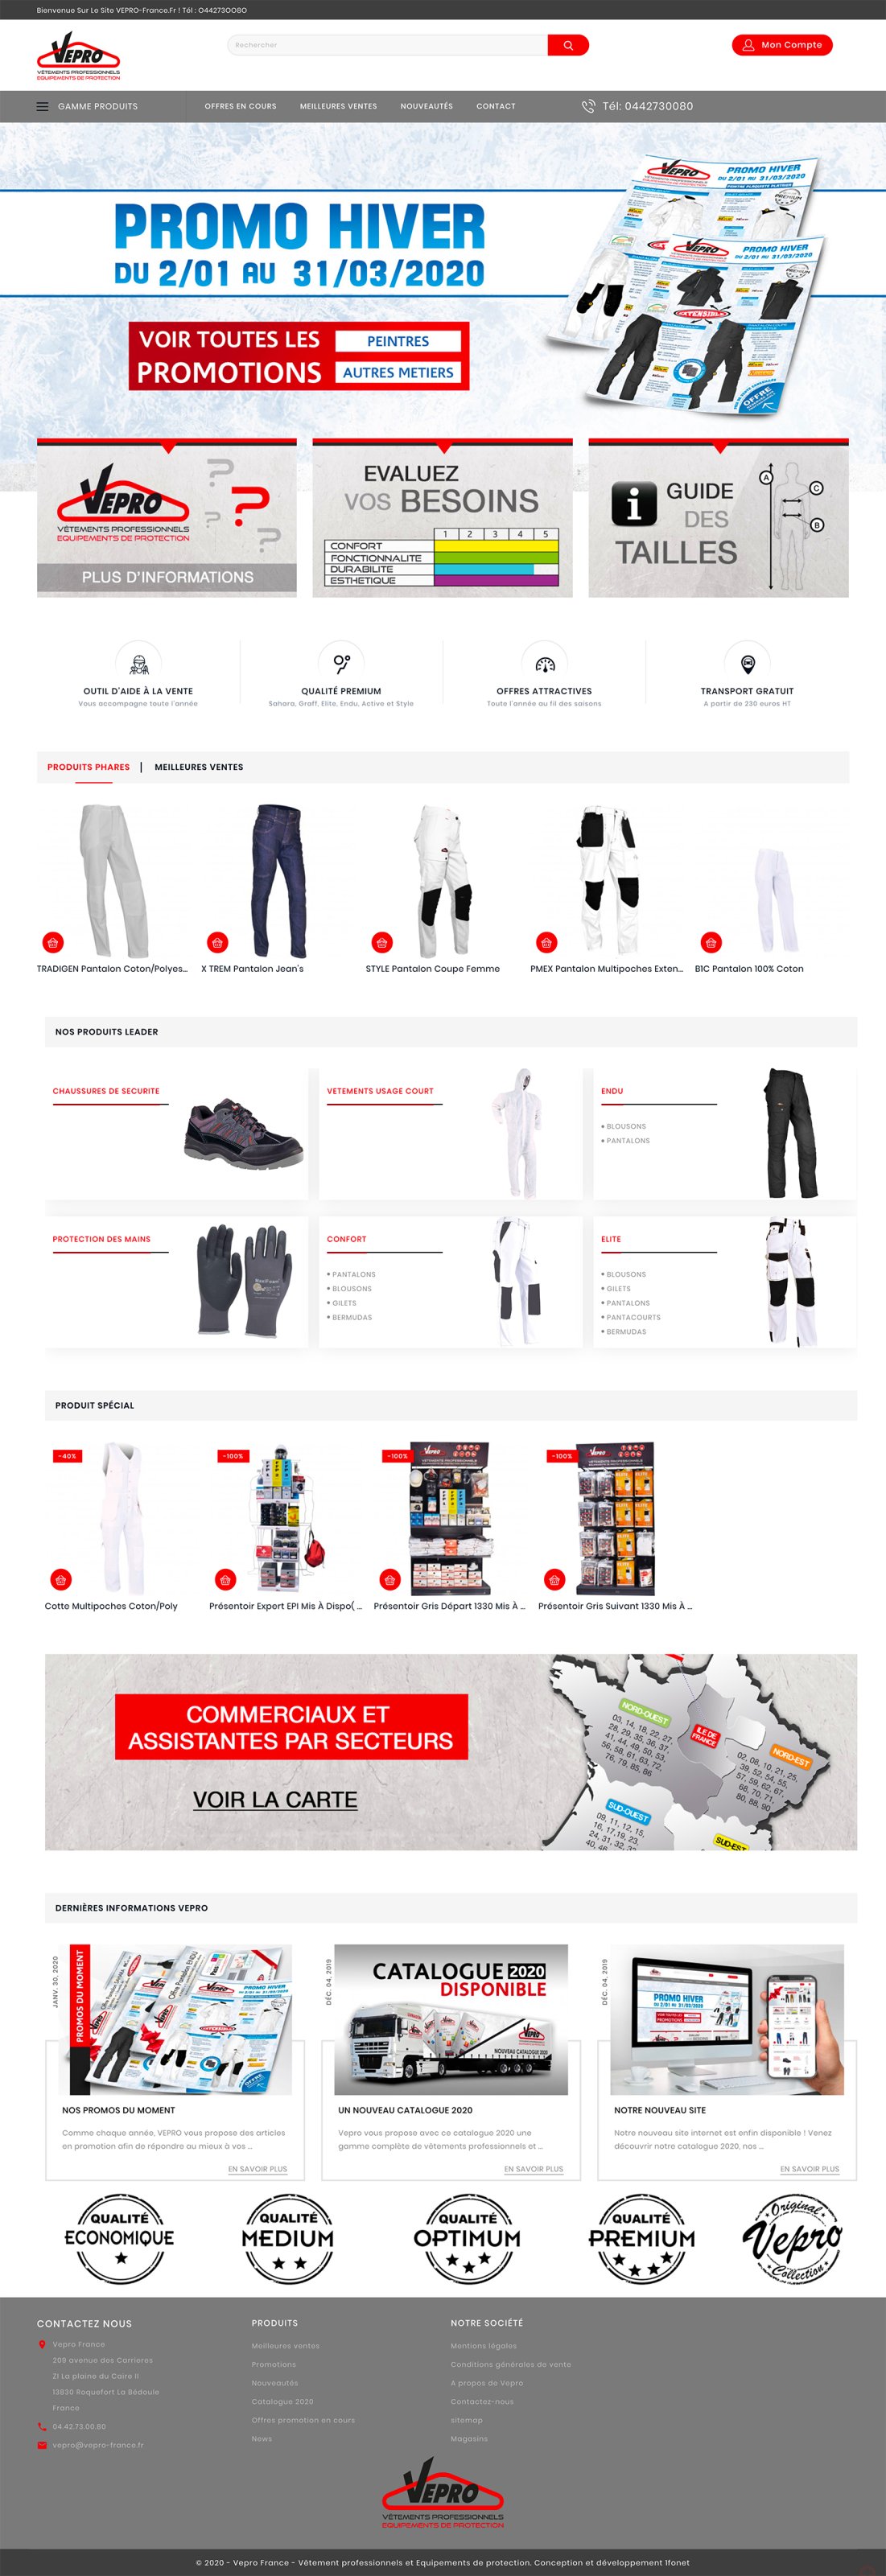 Vepro-france.fr commercialisation de Vêtements professionnels et d'Equipements de protection